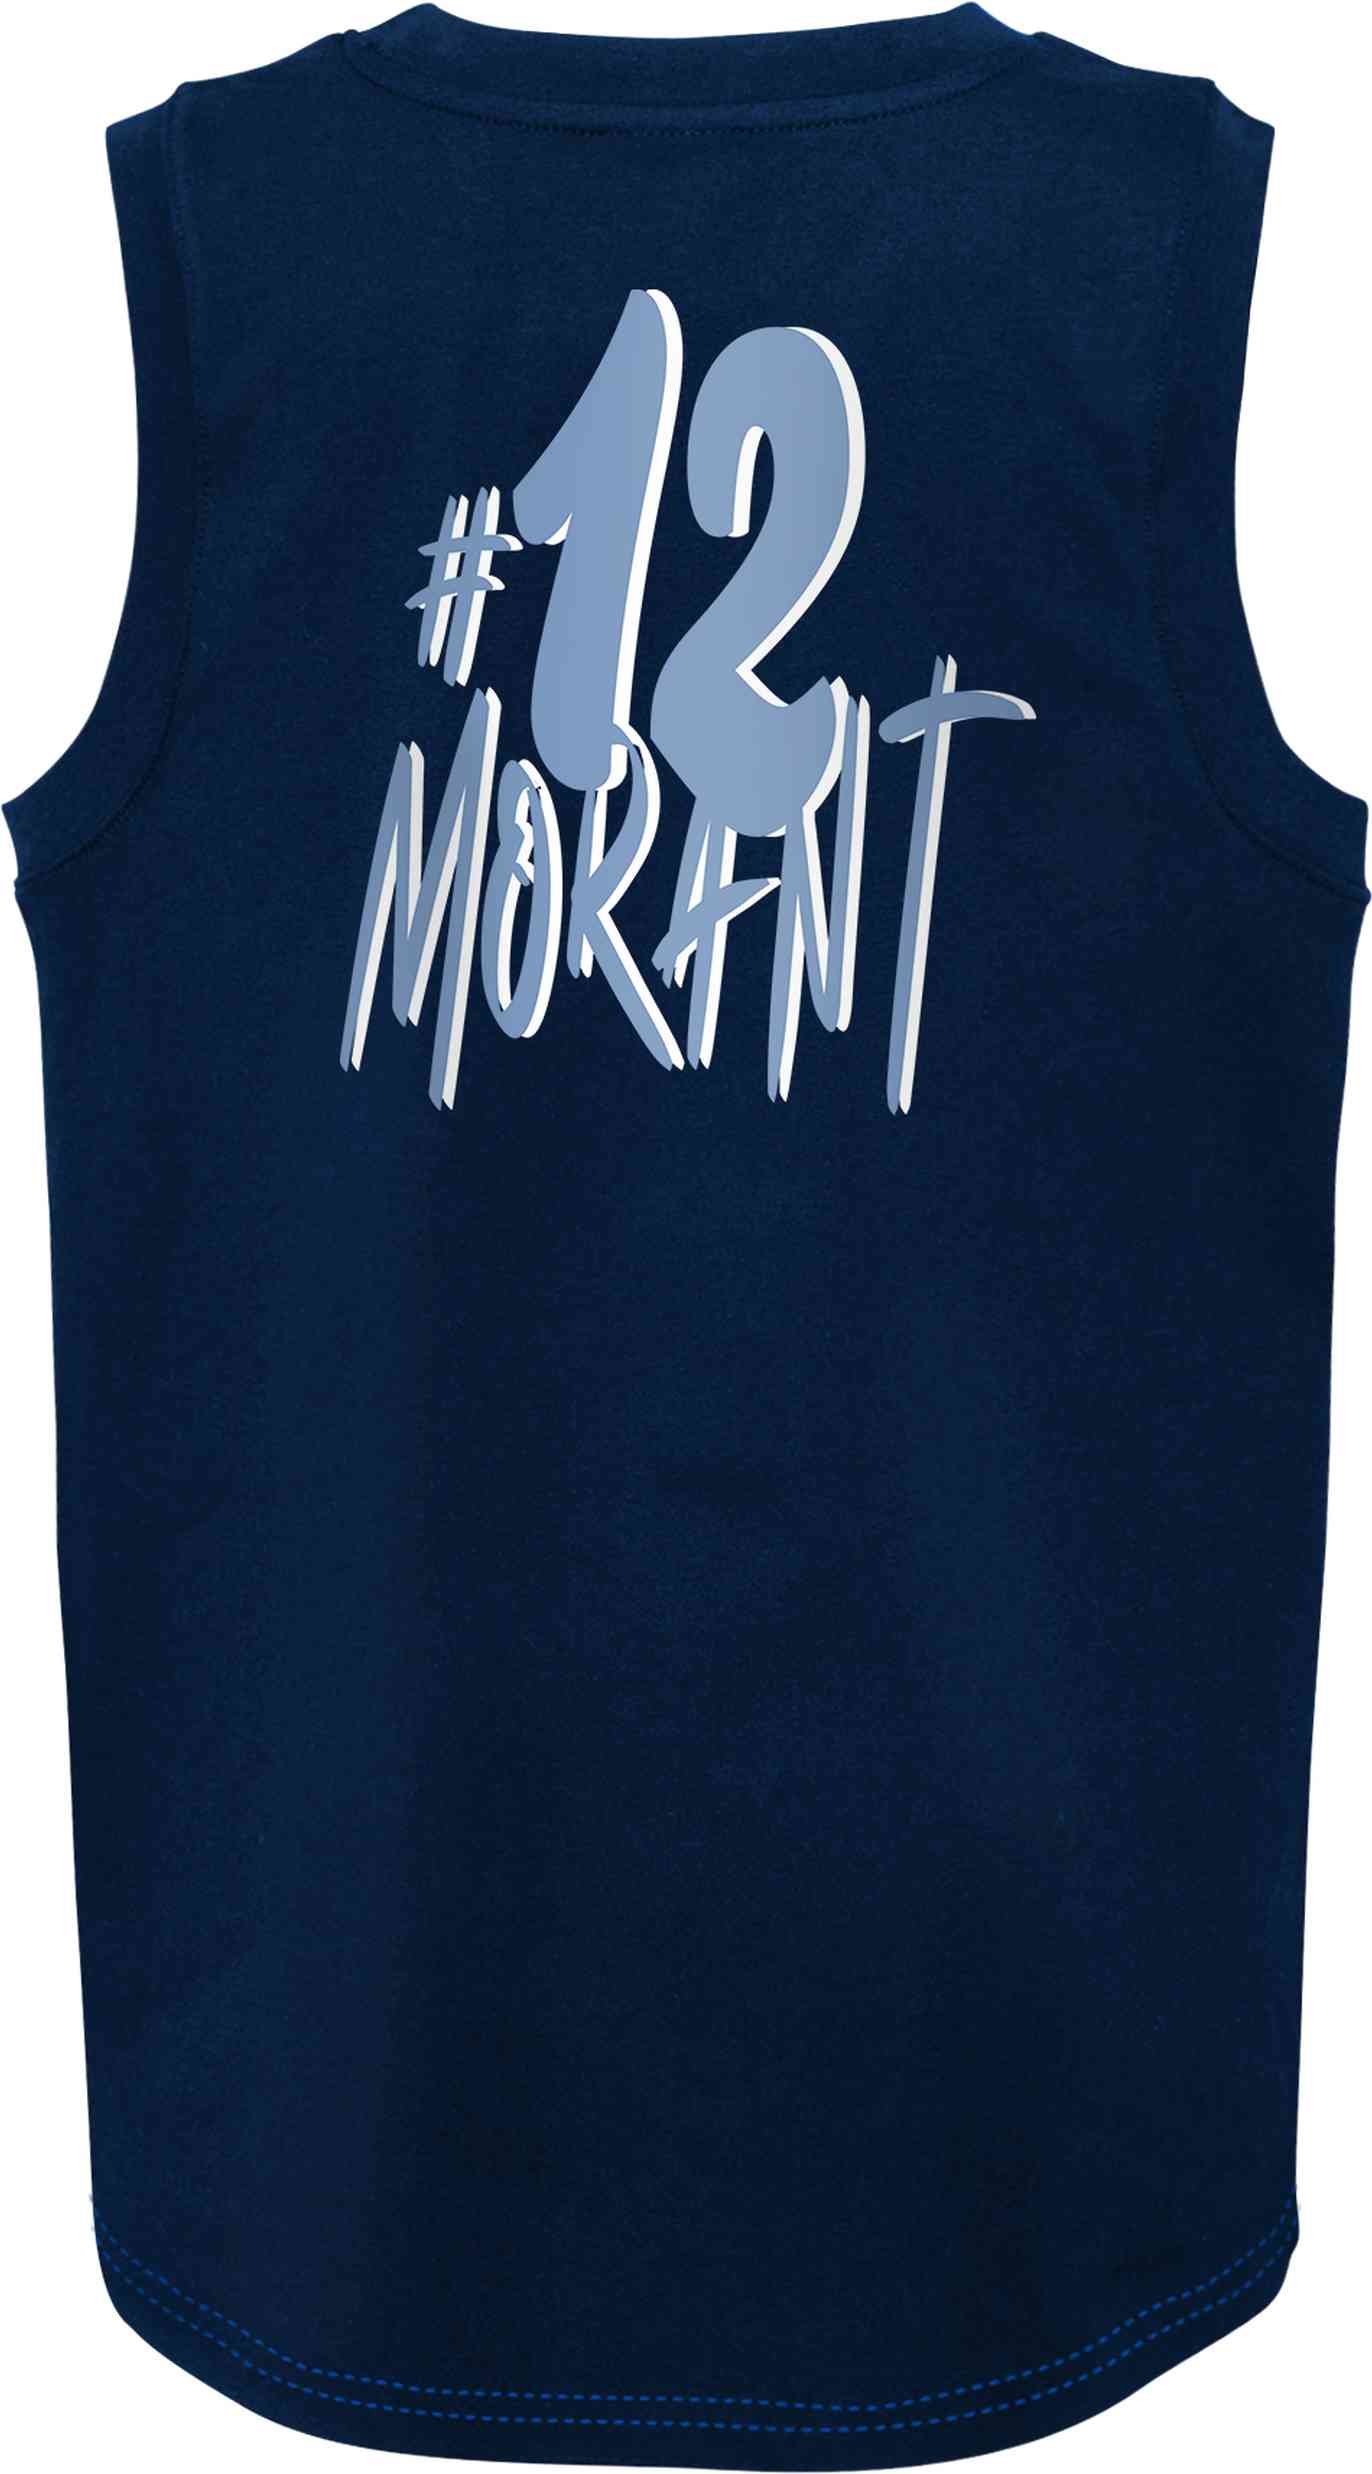 Outerstuff - NBA Memphis Grizzlies Revitalize Morant Tank Top